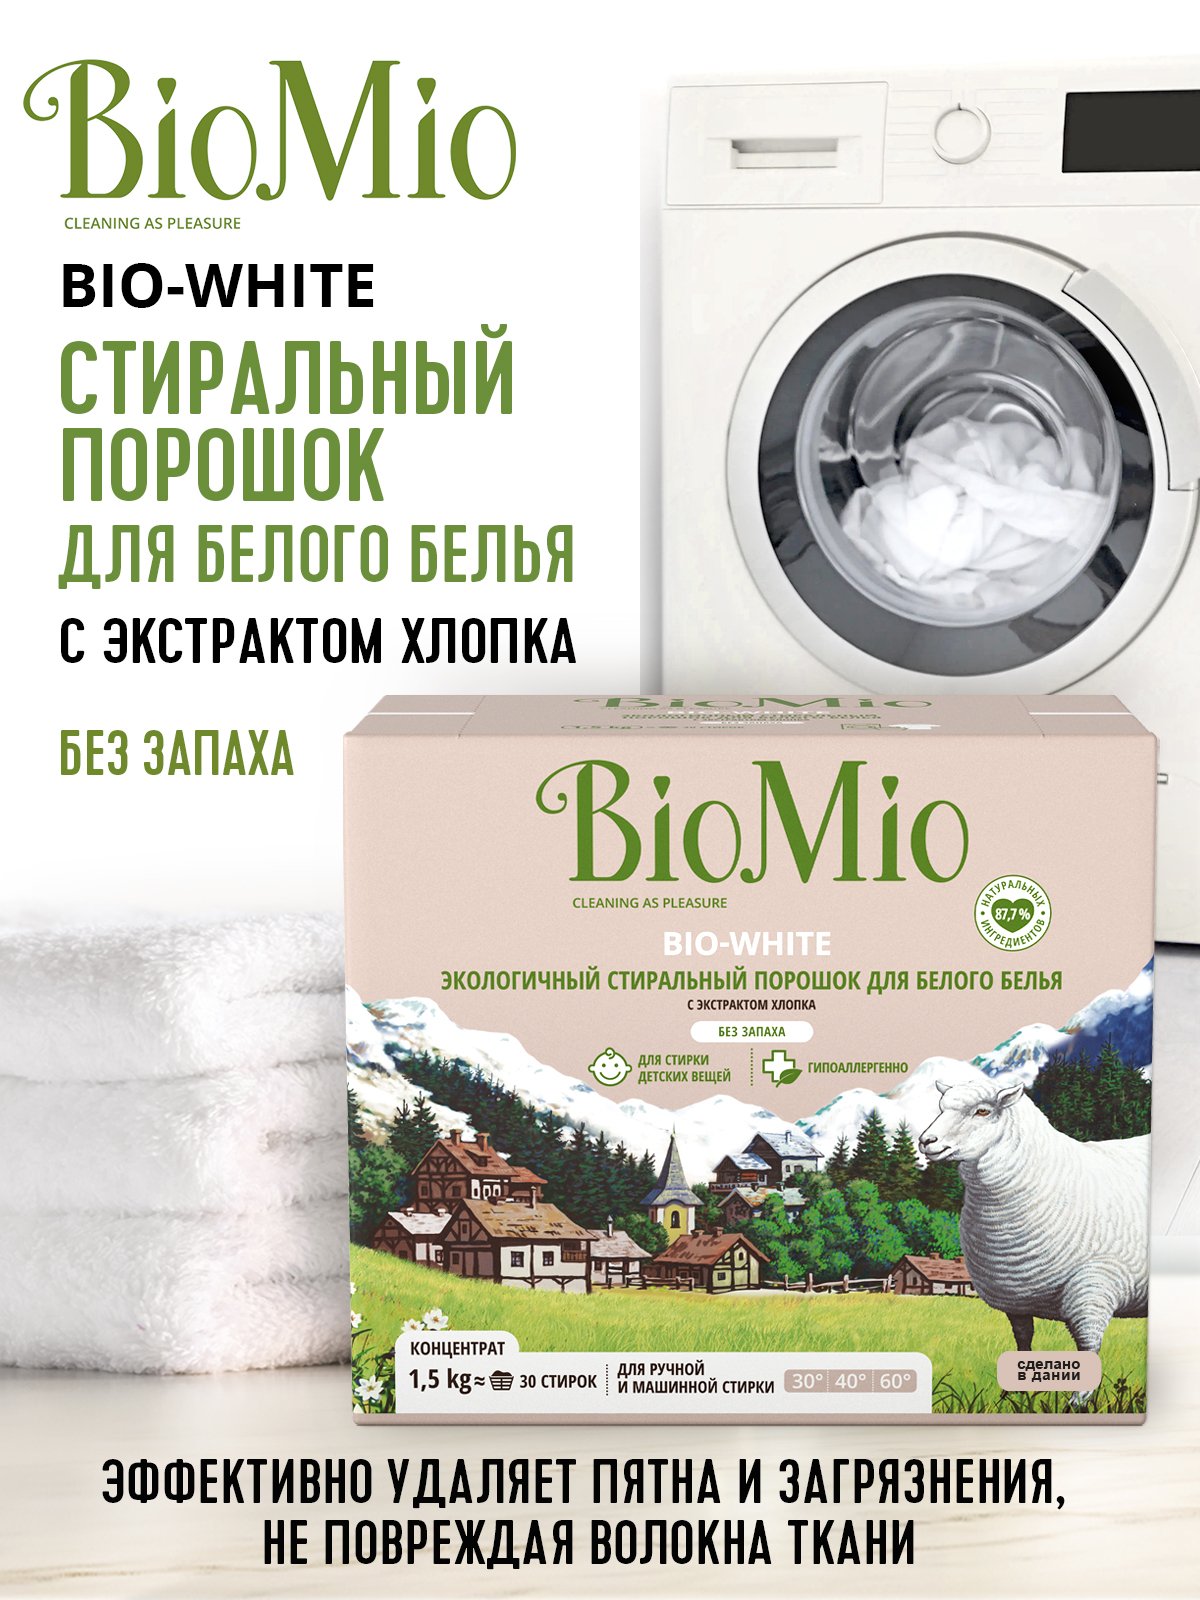 Пральний порошок для білої білизни BioMio Bio-White, концентрат, 1,5 кг - фото 8